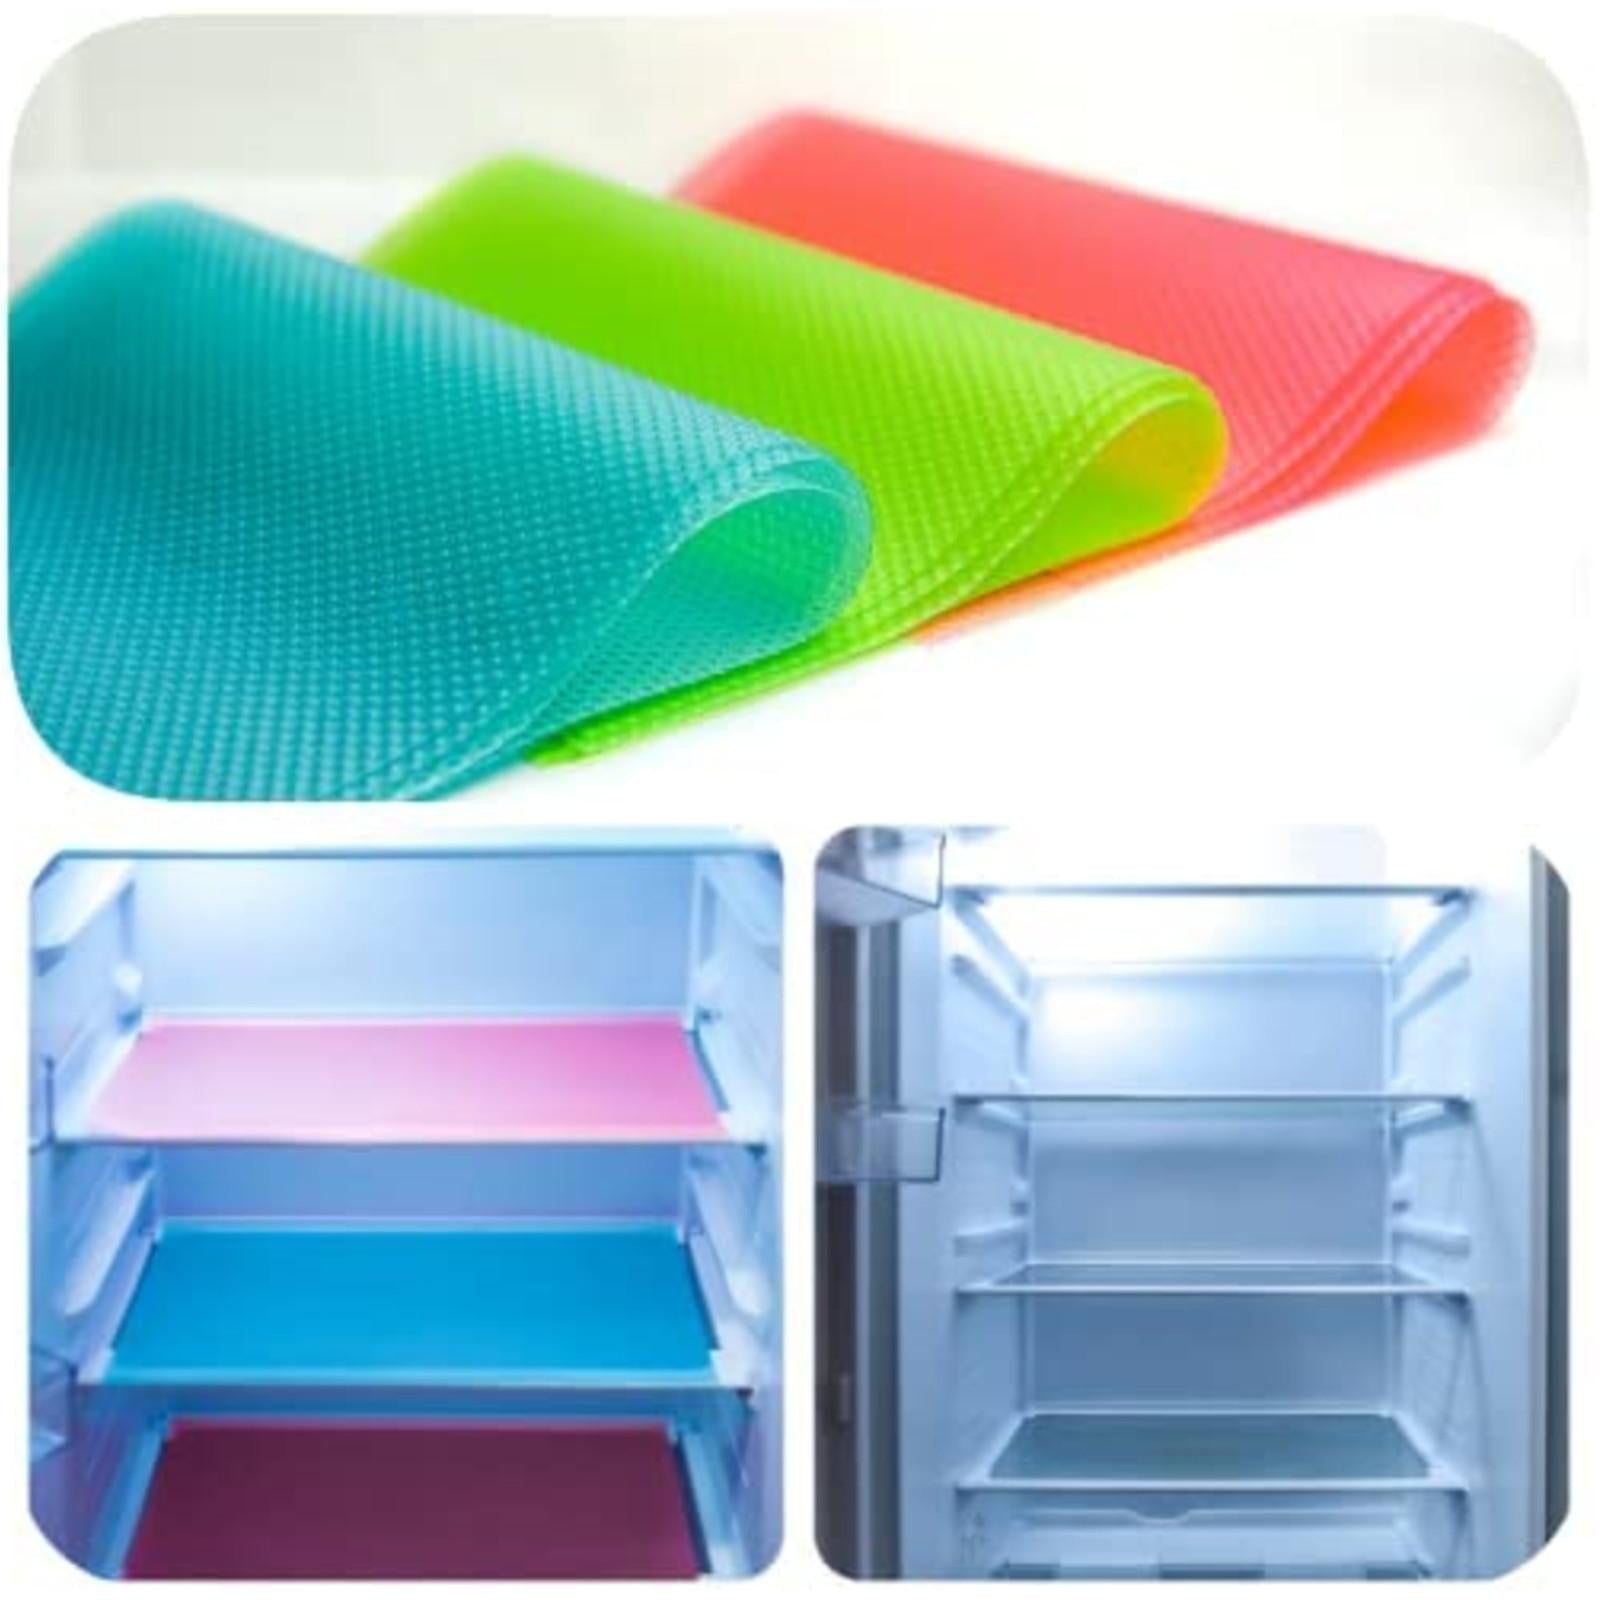 3 Pcs 5ft Refrigerator Mats EVA Shelf Liners For Glass Shelves Washable Pads Liners For Refrigerator Moorescarts